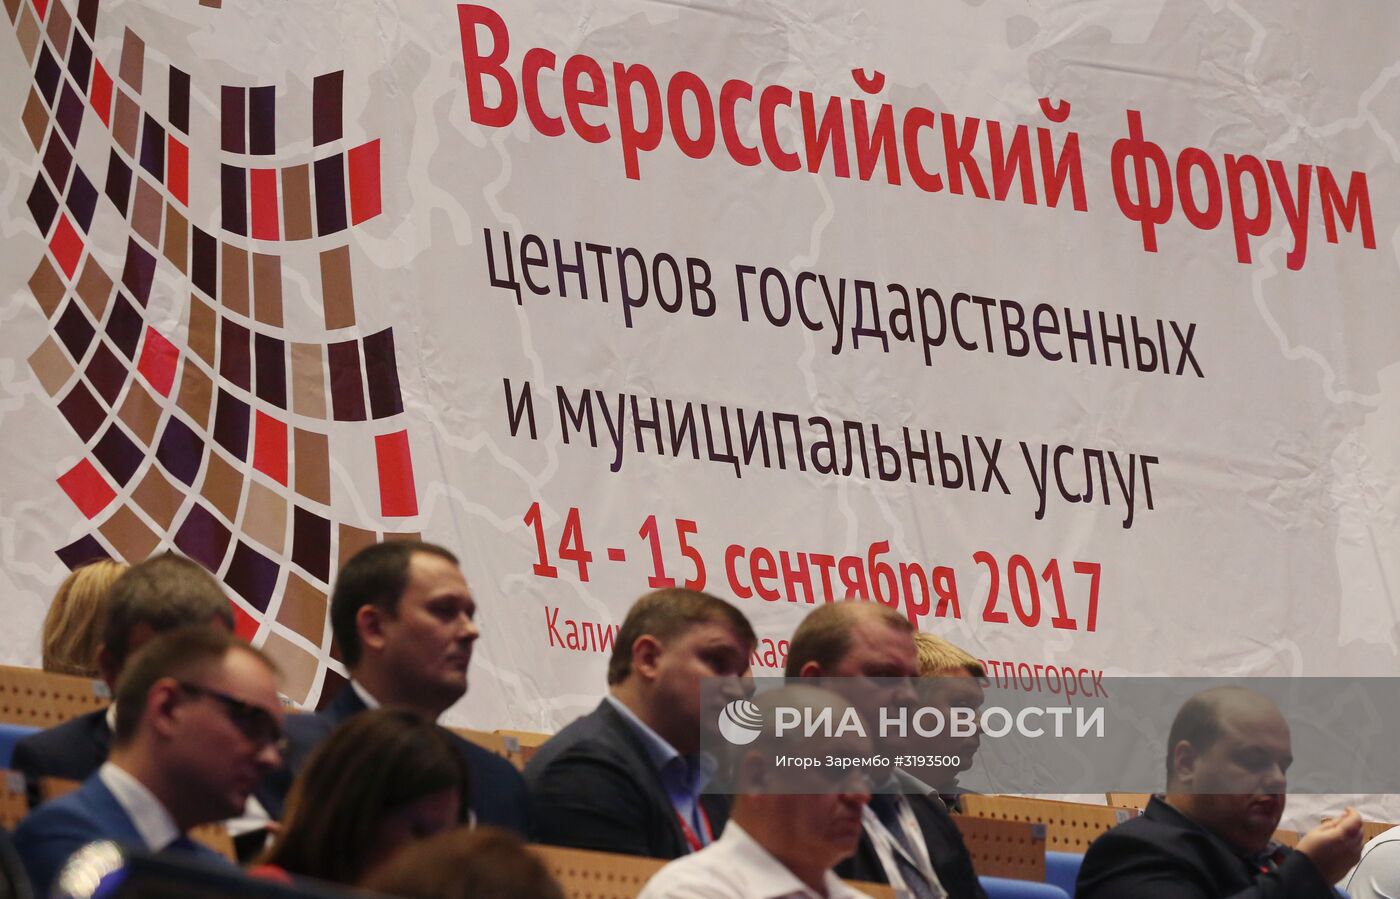 Всероссийский форум центров госуслуг